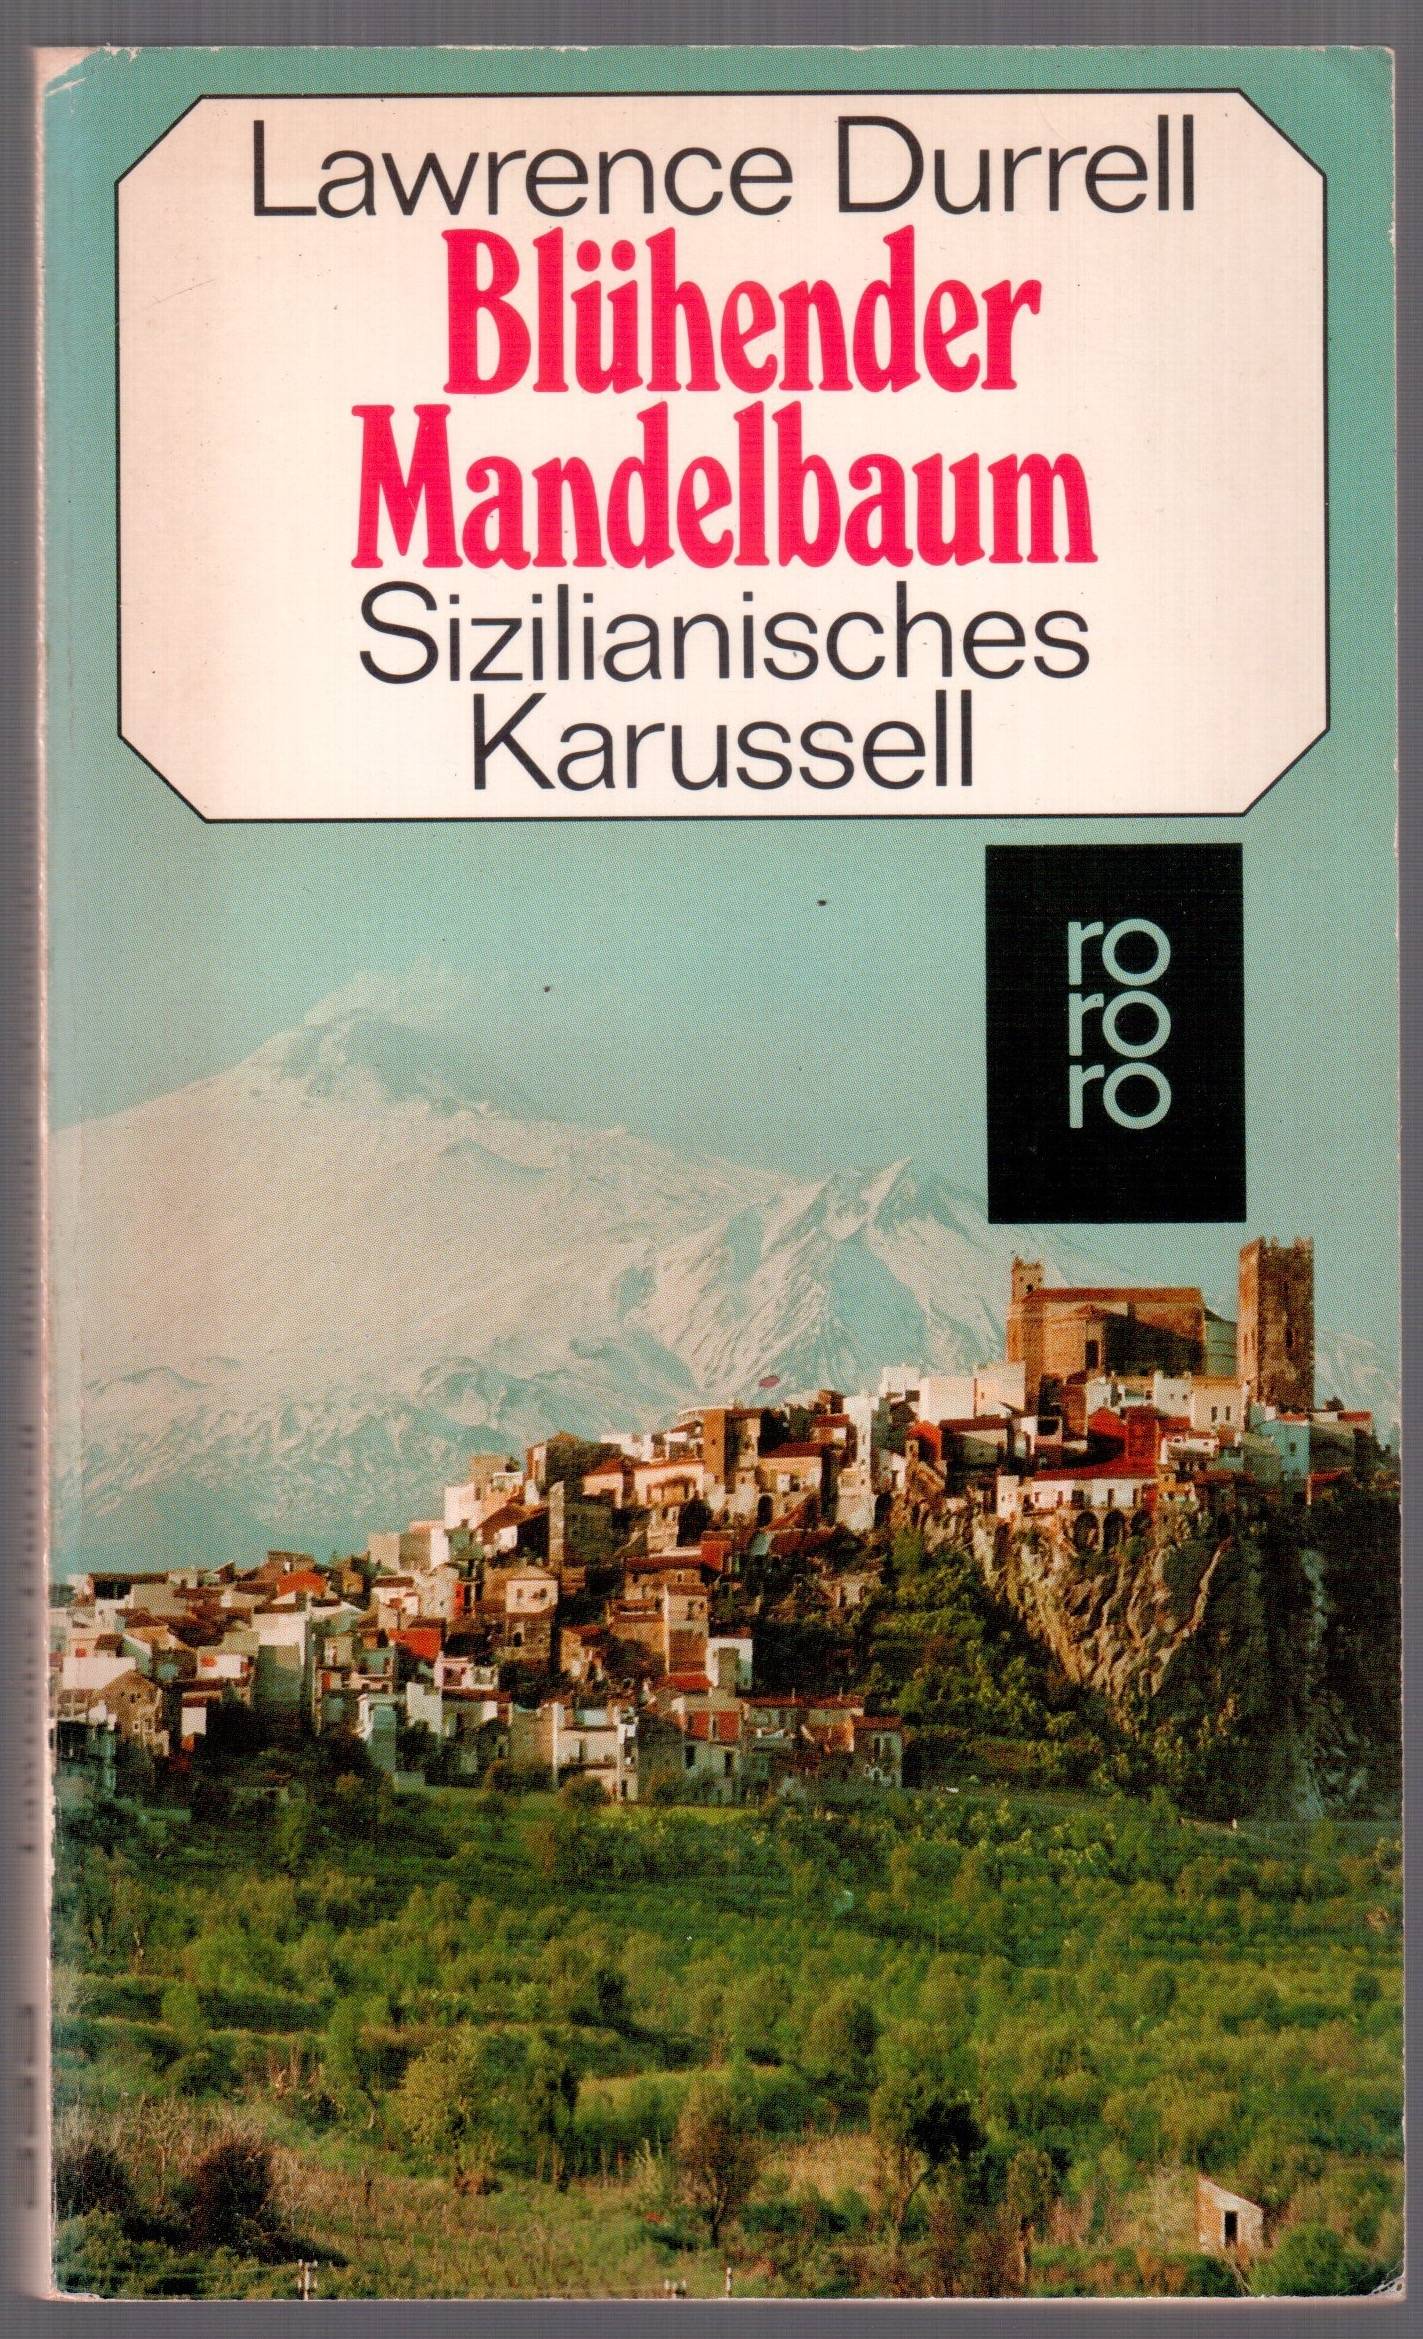 Blühender Mandelbaum - Sizilianisches Karussell - Lawrence Durrell